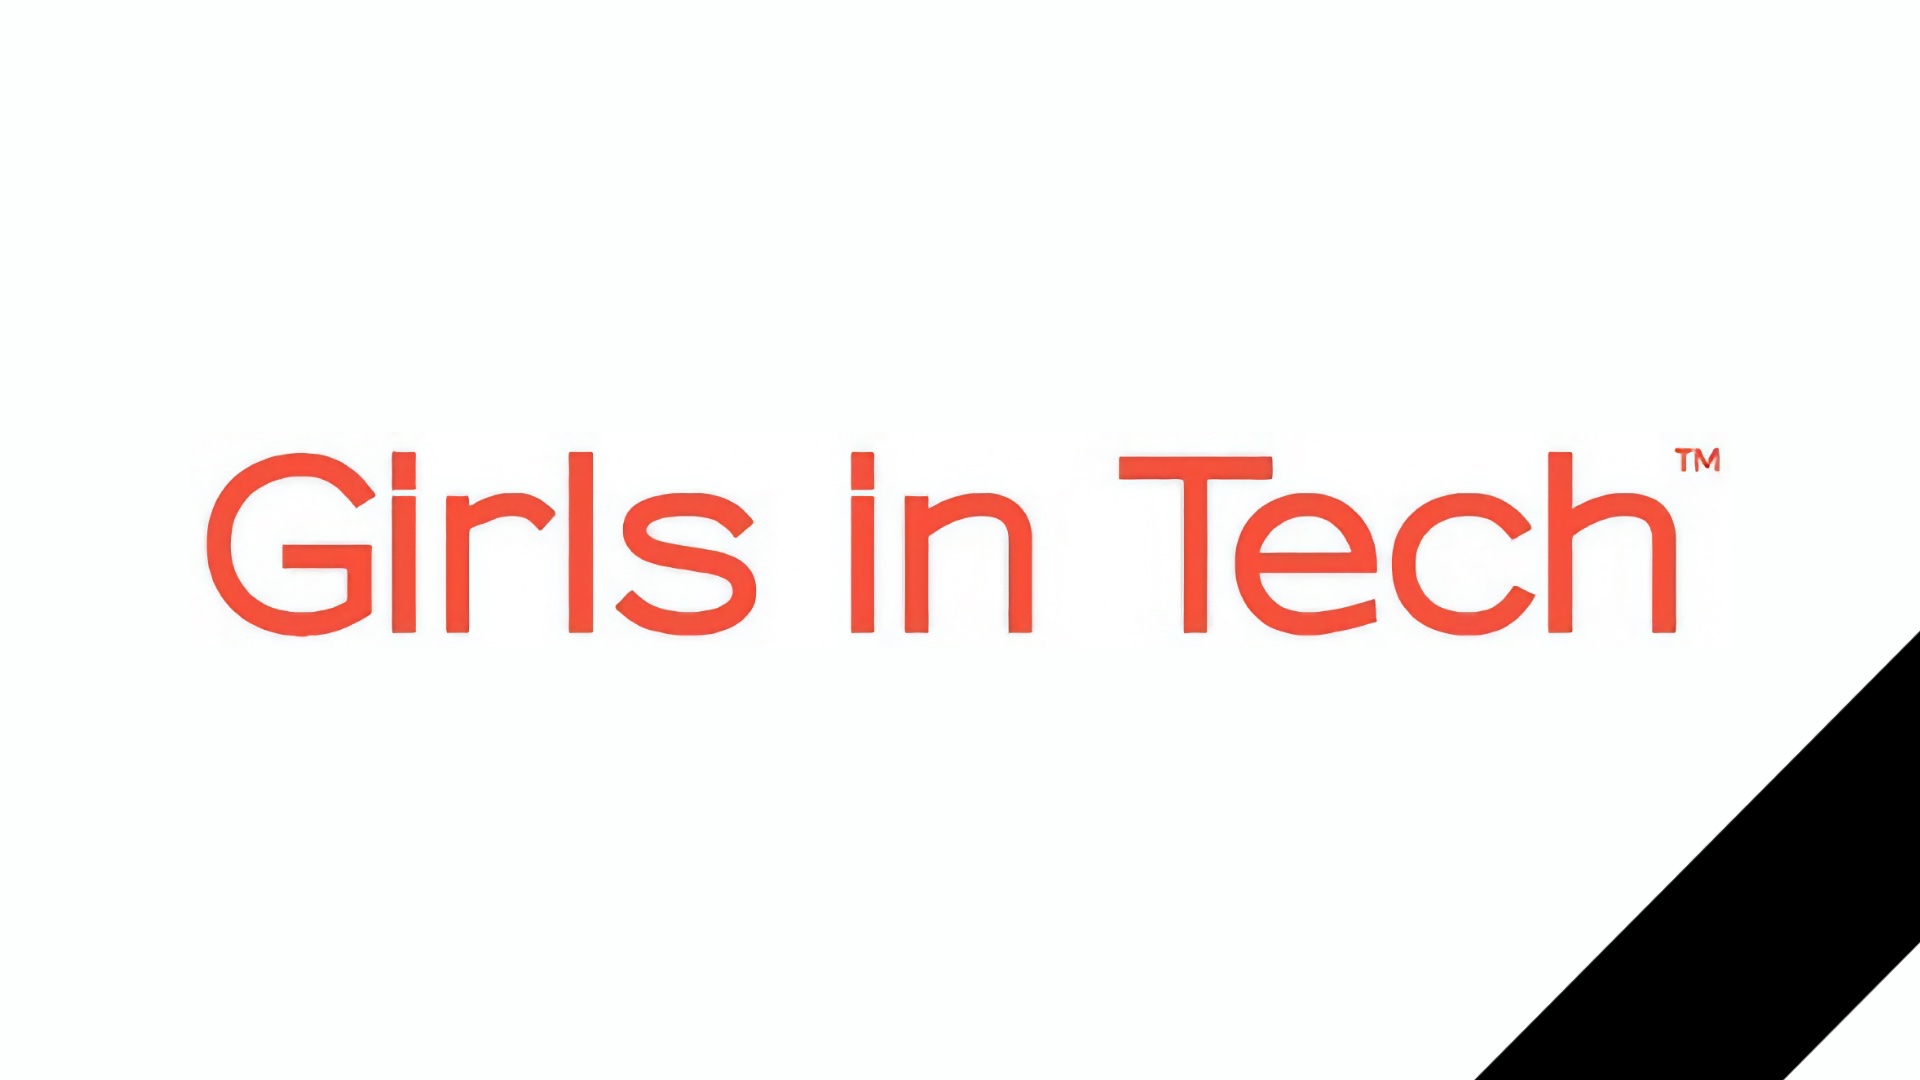 Фонд для поддержки девушек в IT «Girls in Tech» закрылся на 18-й год своего существования